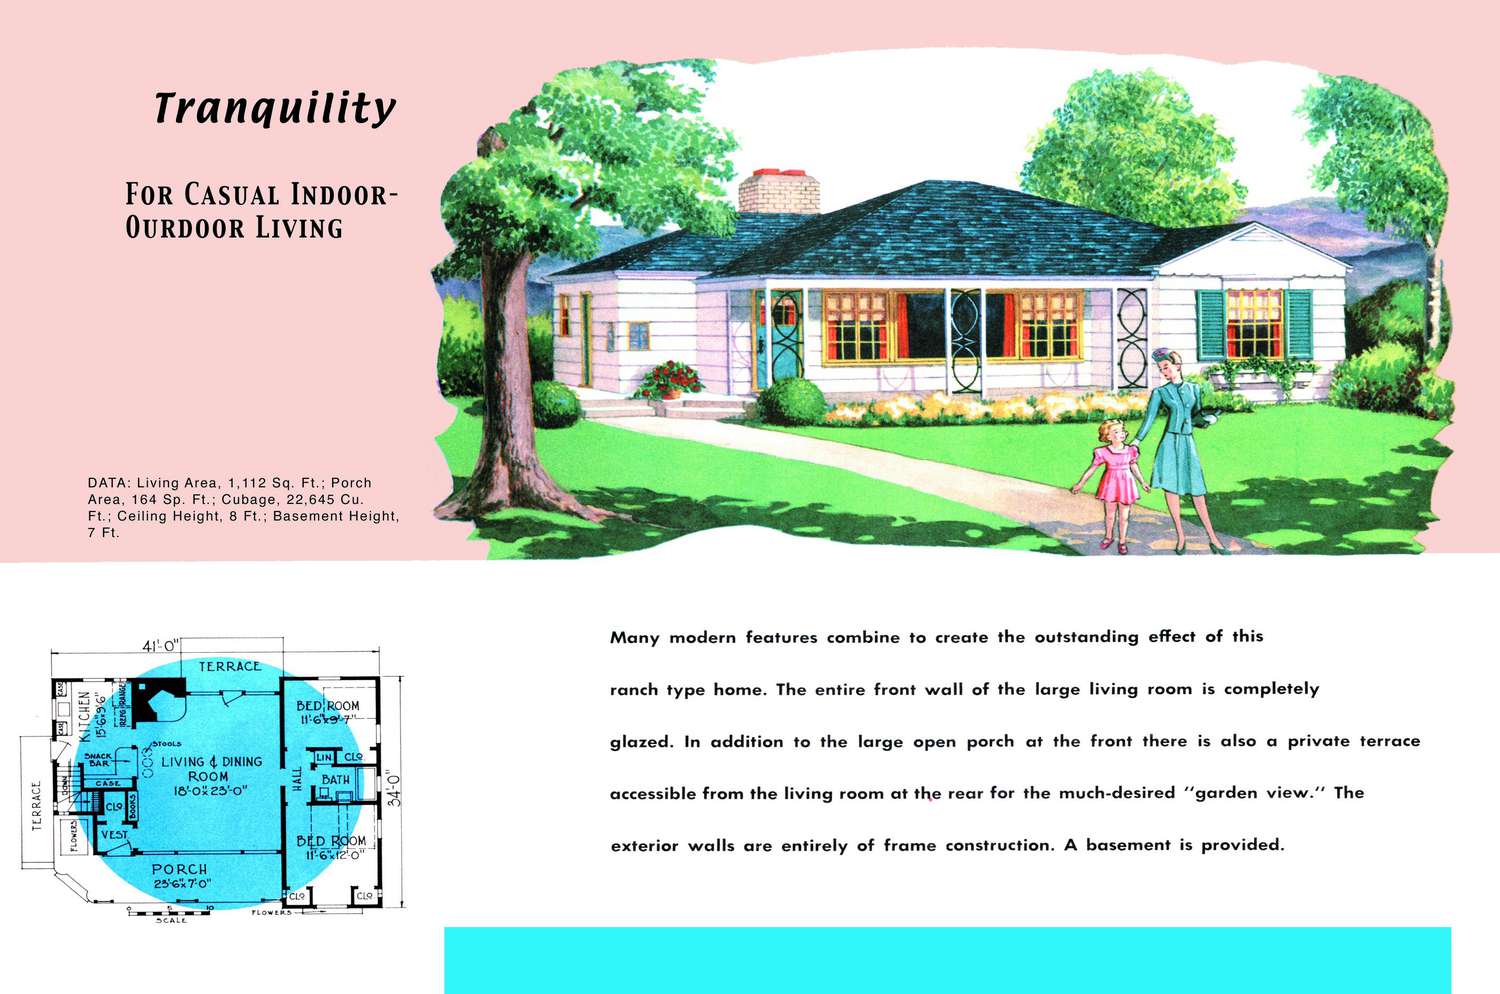 1950er Jahre Grundriss und Rendering eines Hauses im Ranch-Stil namens Tranquility